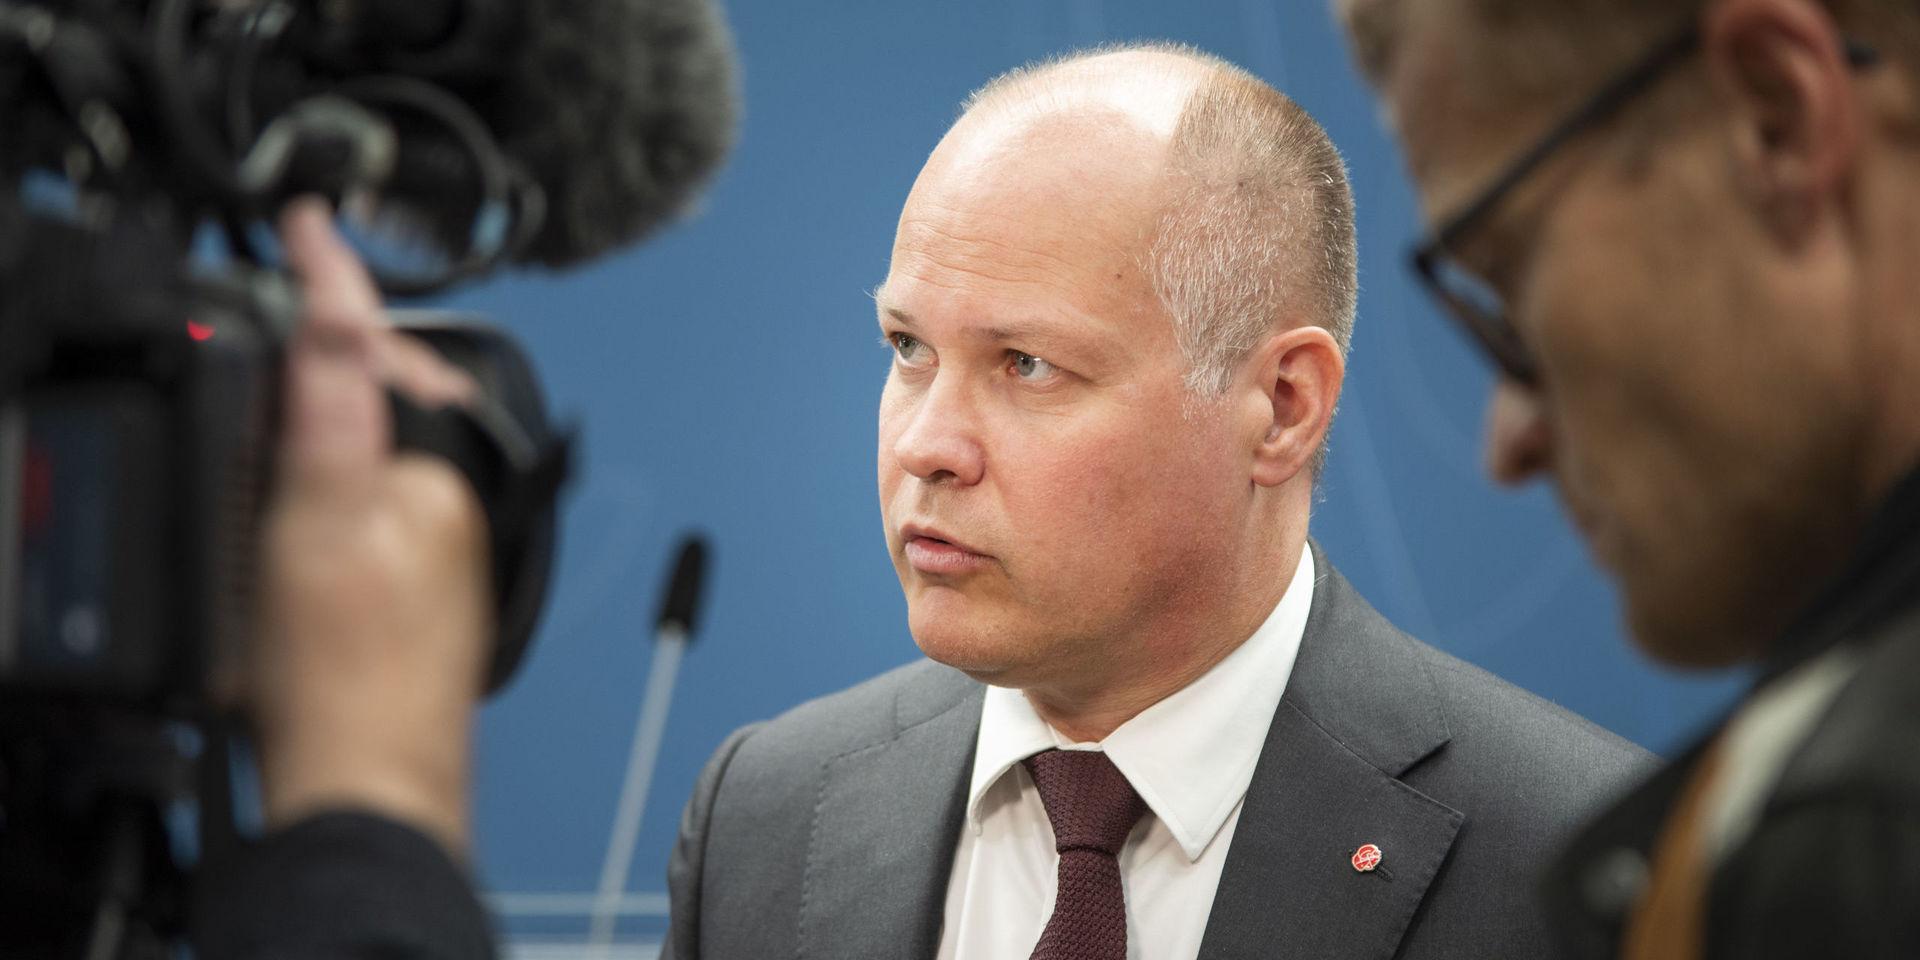 Migrationsminister Morgan Johansson har meddelat Ekot i Sveriges Radio att man inte planerar att se över regelverket. Debattörerna uppmanar nu till solidaritet gällande de grupper som riskerar att drabbats hårdast av krisens ekonomiska följder.